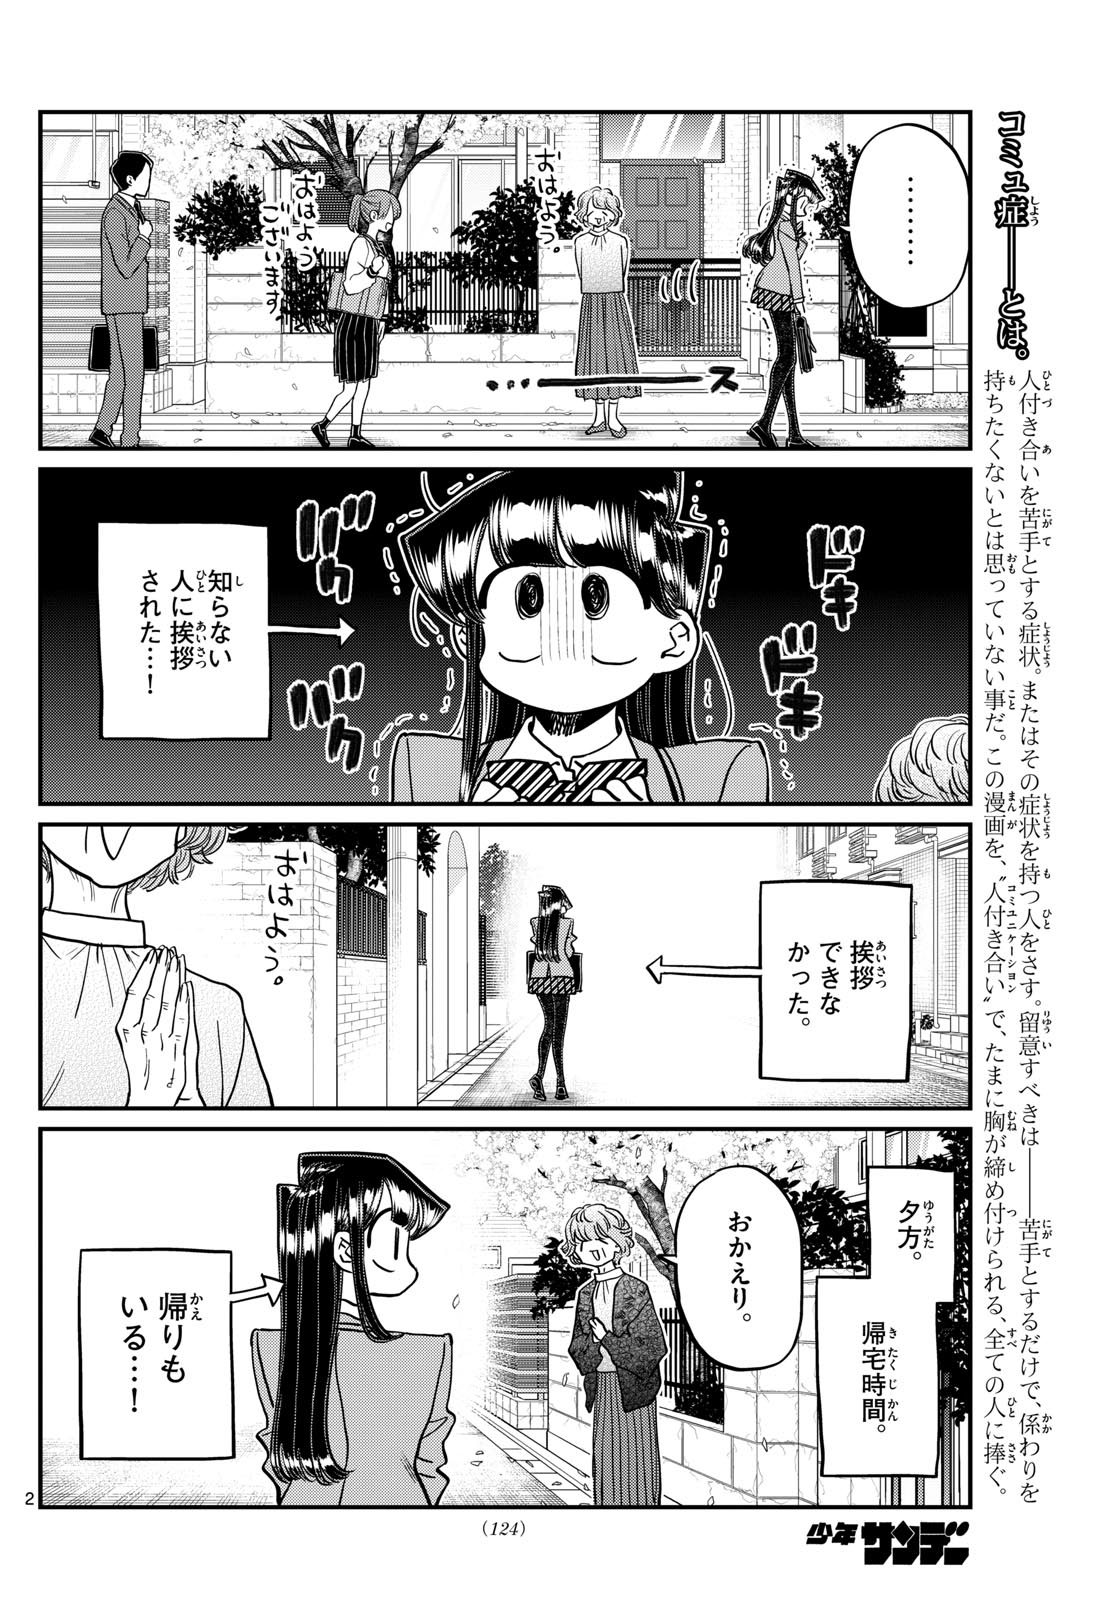 Komi-san wa Komyushou Desu - Chapter 434 - Page 2